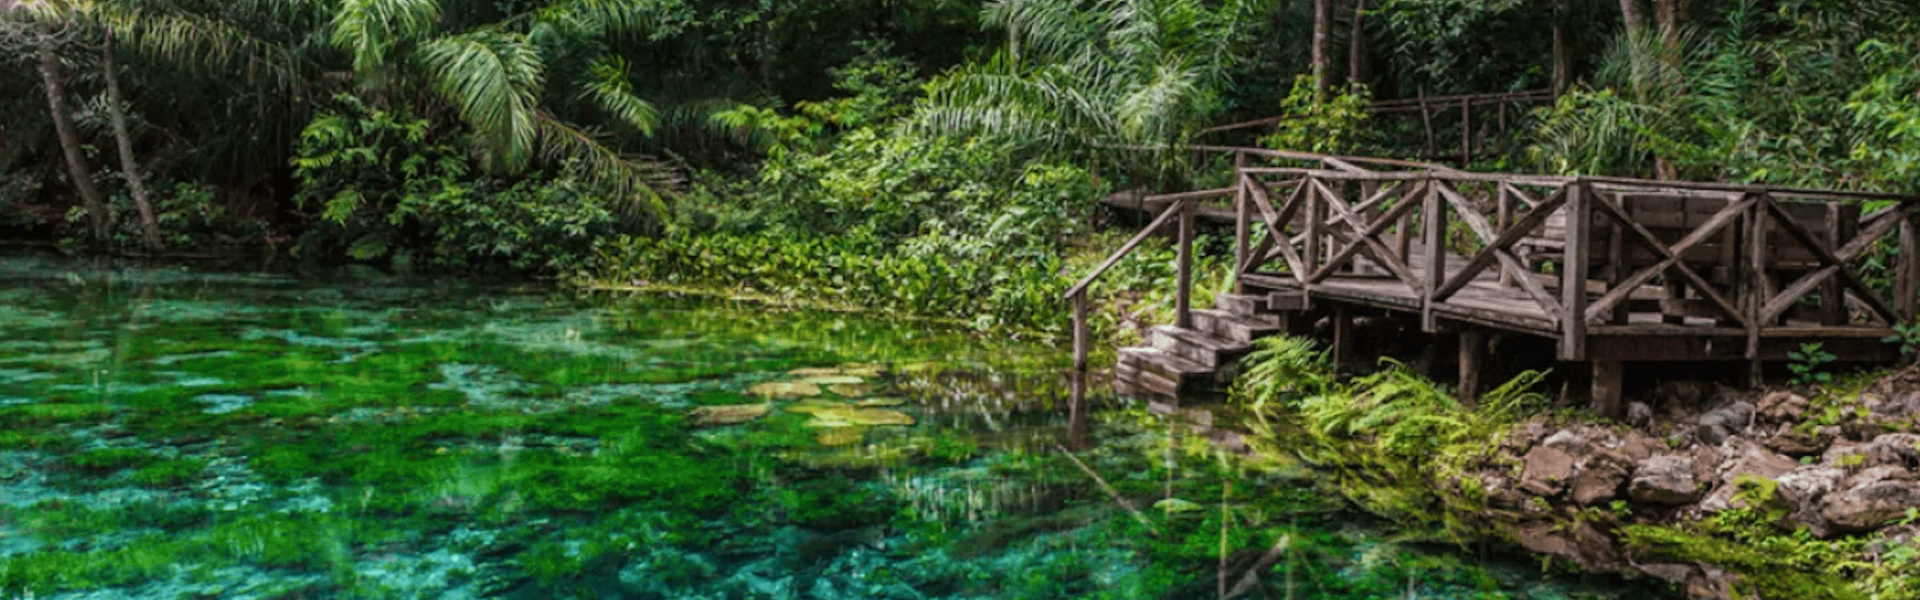 Brasil é o melhor país para ecoturismo, diz Forbes